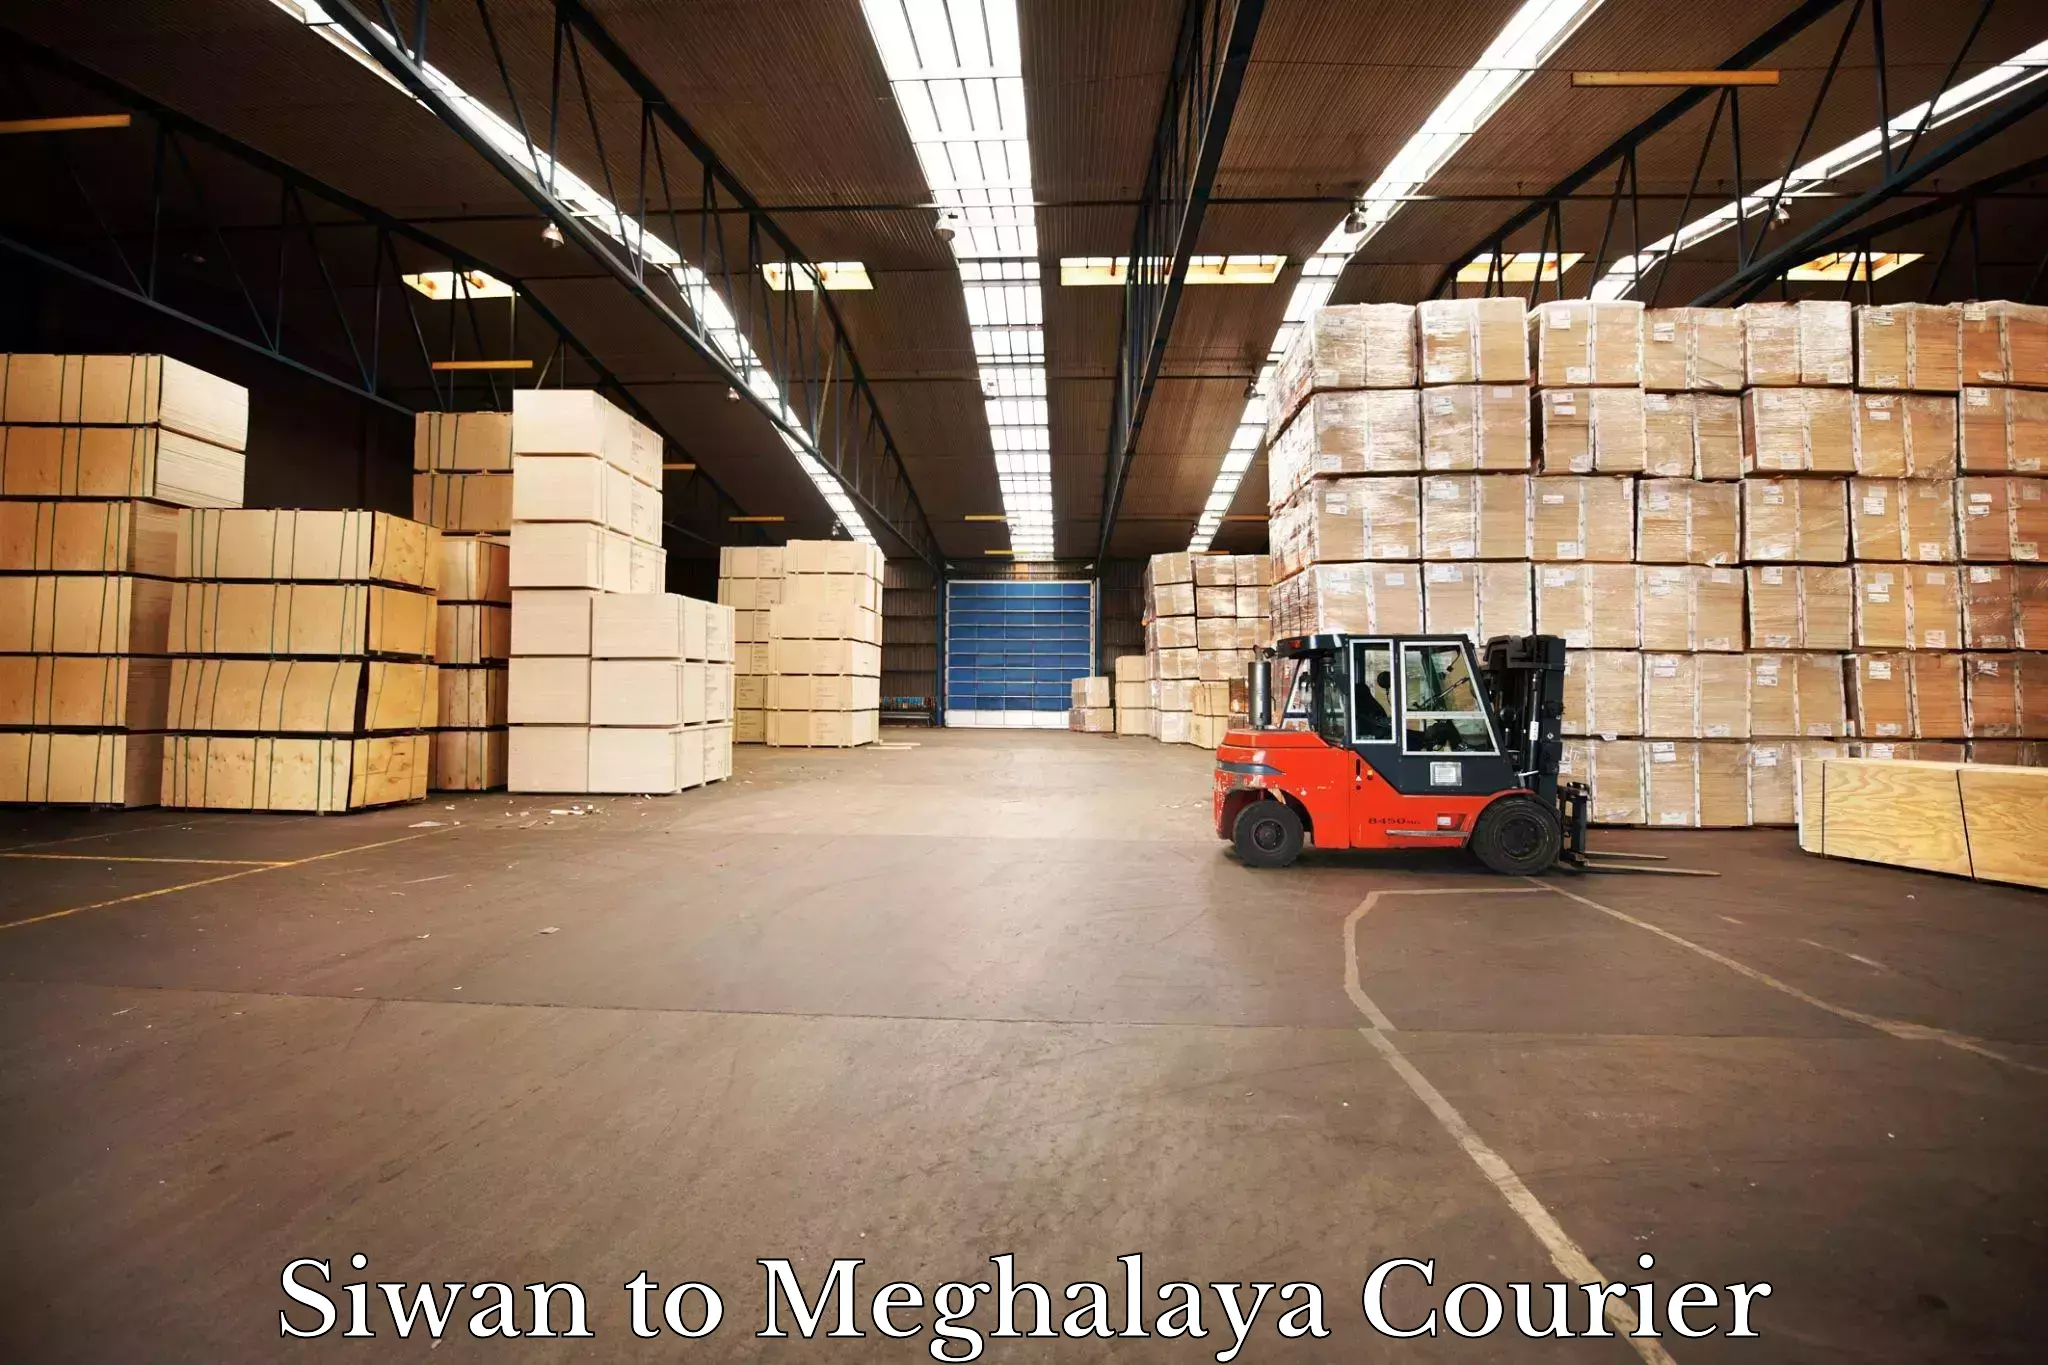 Global logistics network Siwan to Meghalaya